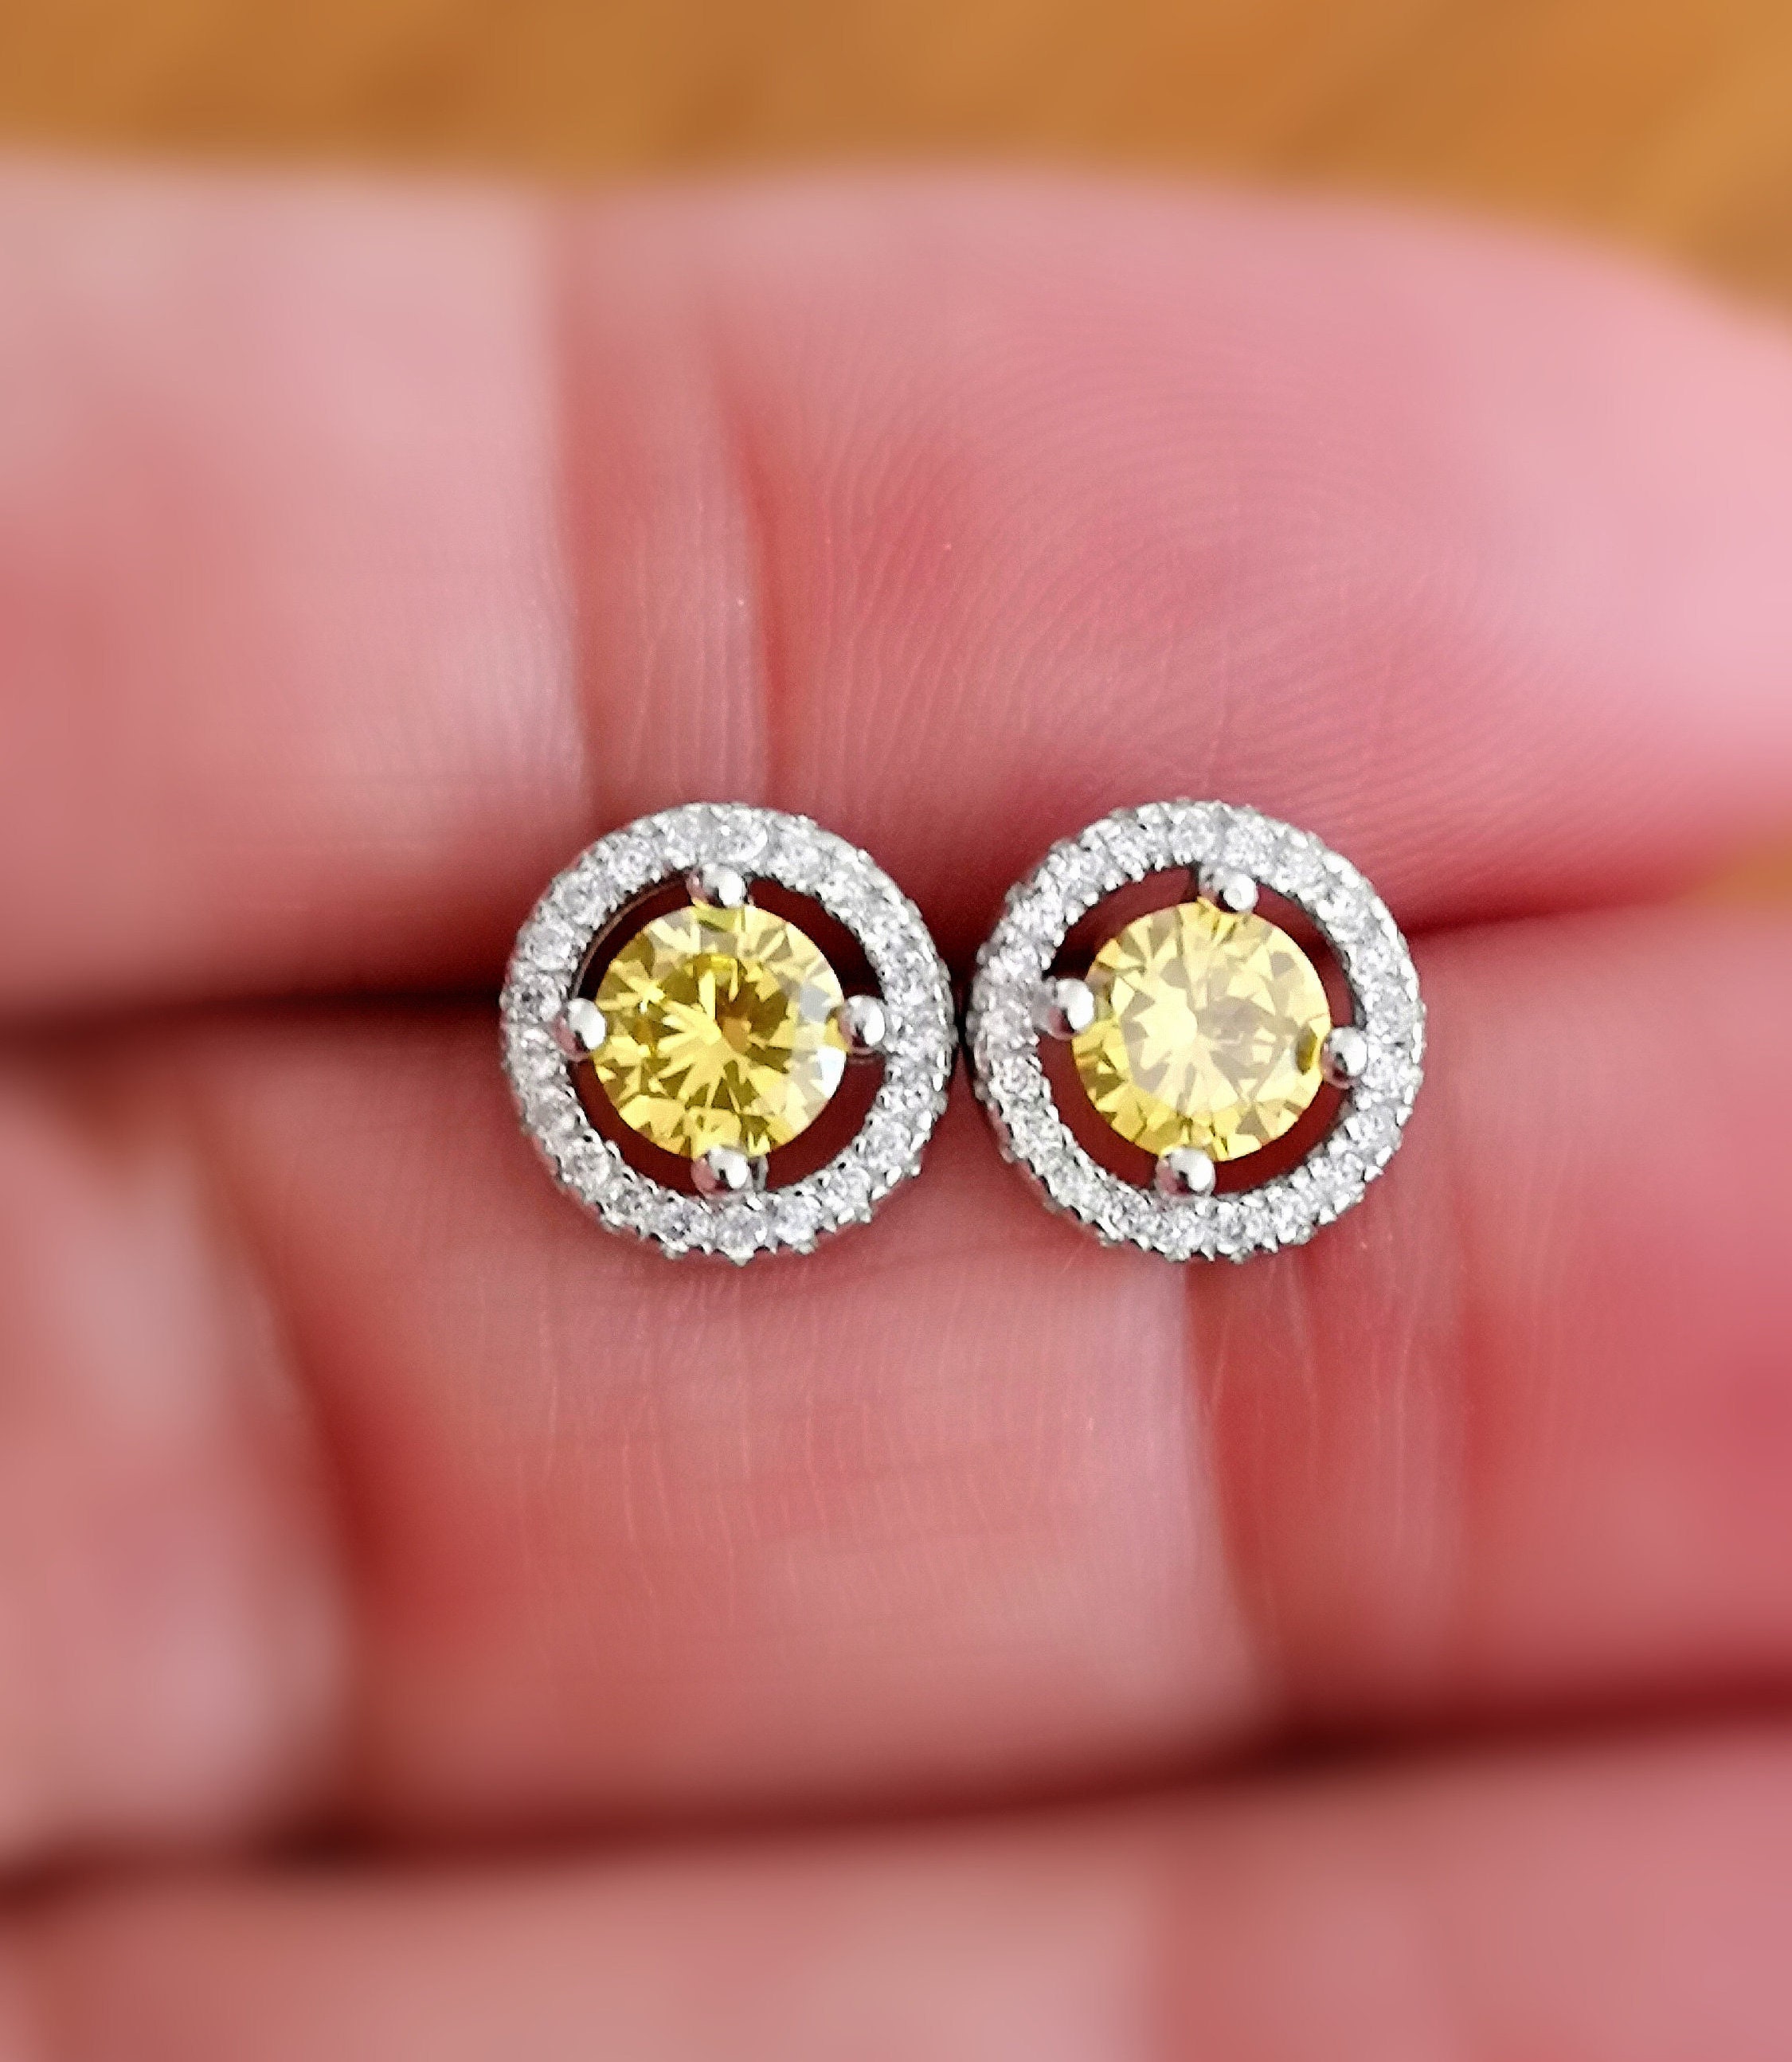 1 Ct Diamond Stud Earrings in 14K White Gold Over Halo | Etsy UK